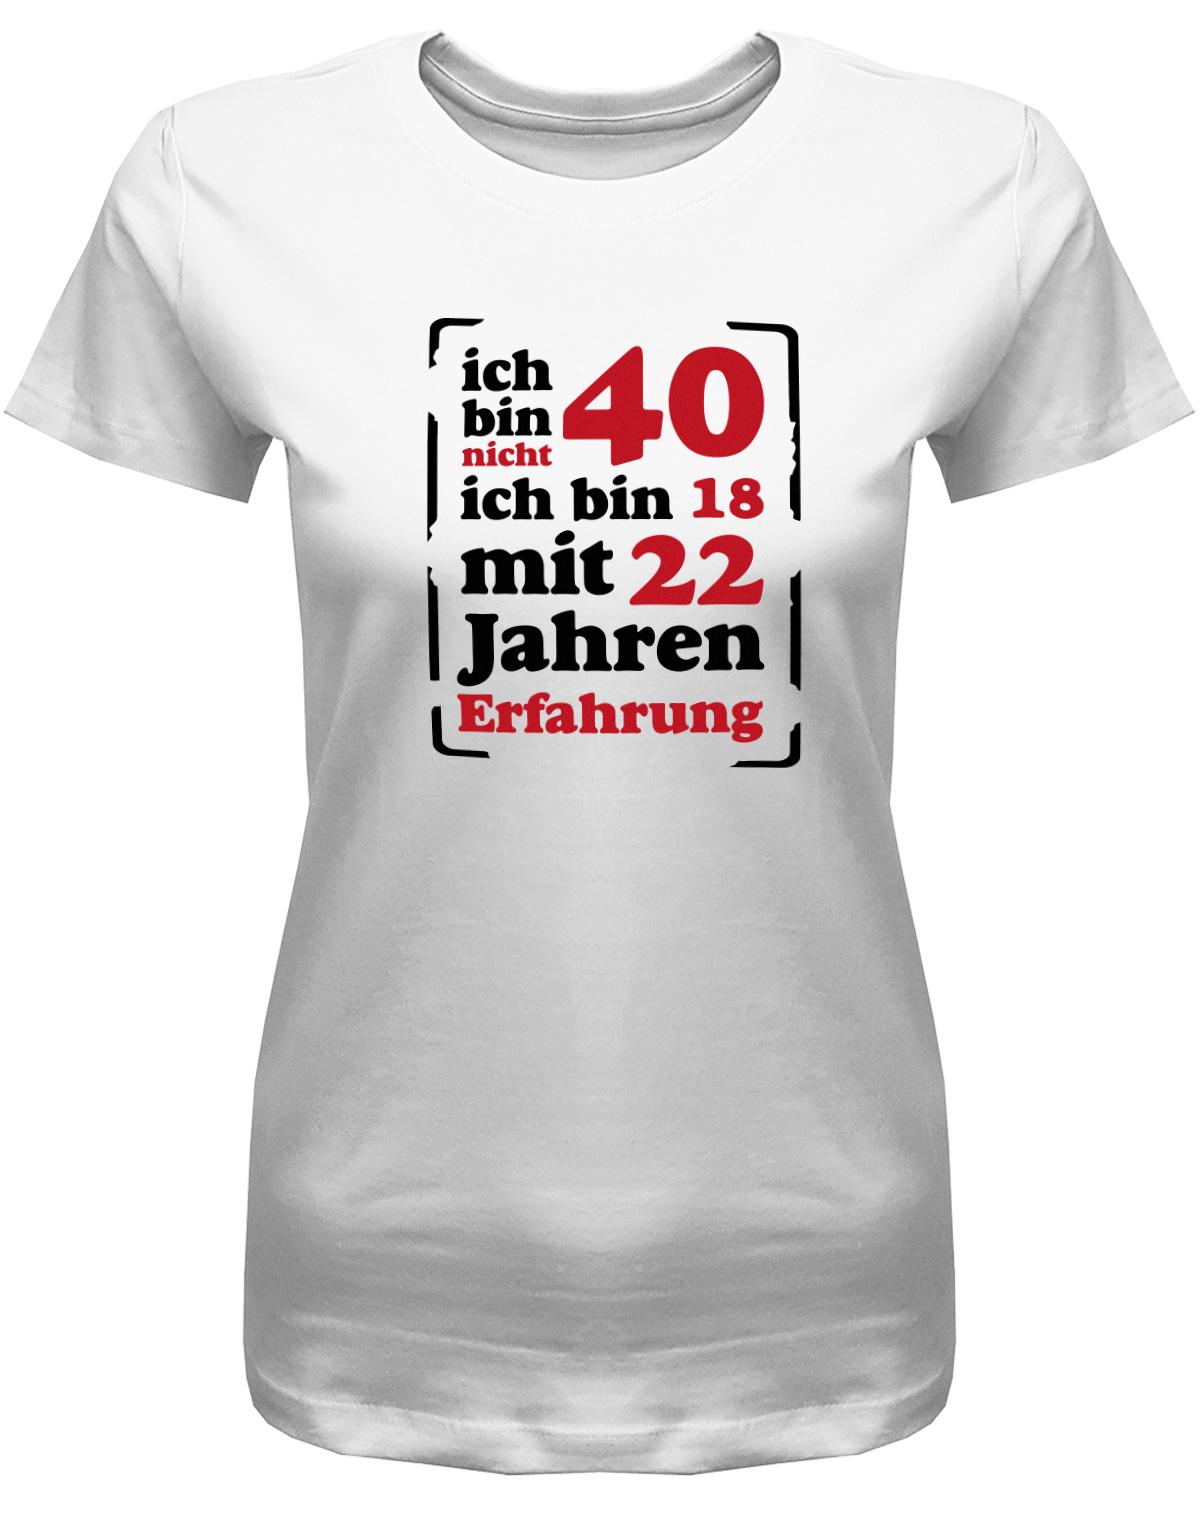 Lustiges T-Shirt zum 40. Geburtstag für die Frau Bedruckt mit Ich bin nicht 40, ich bin 18, mit 32 Jahren Erfahrung. Weiss